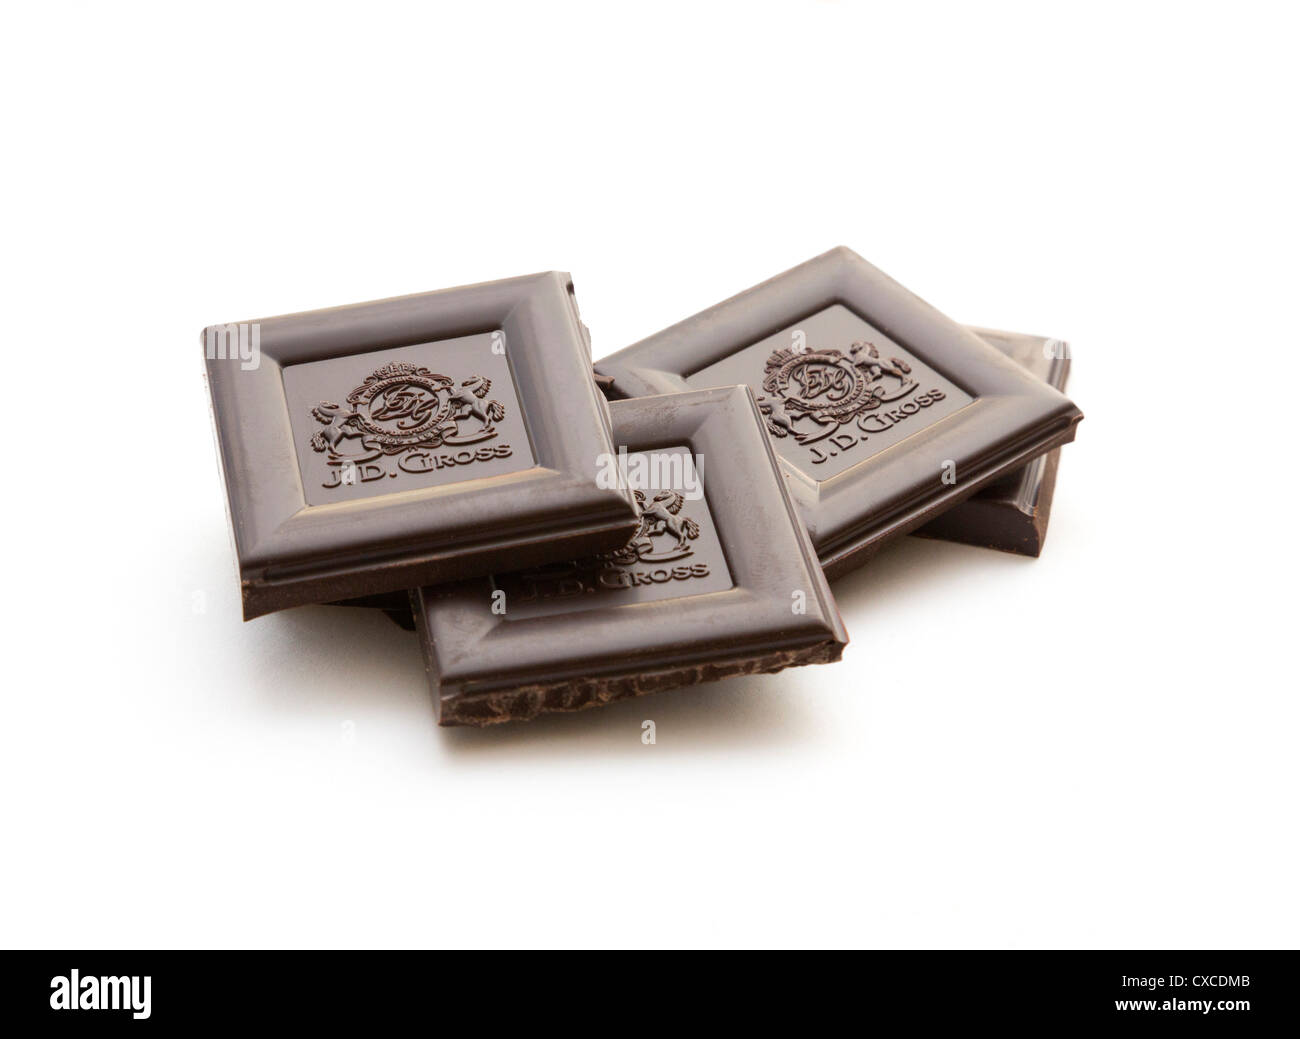 Le chocolat noir fait par J D / brut Rausch Schokolade vendus par Lidl Banque D'Images